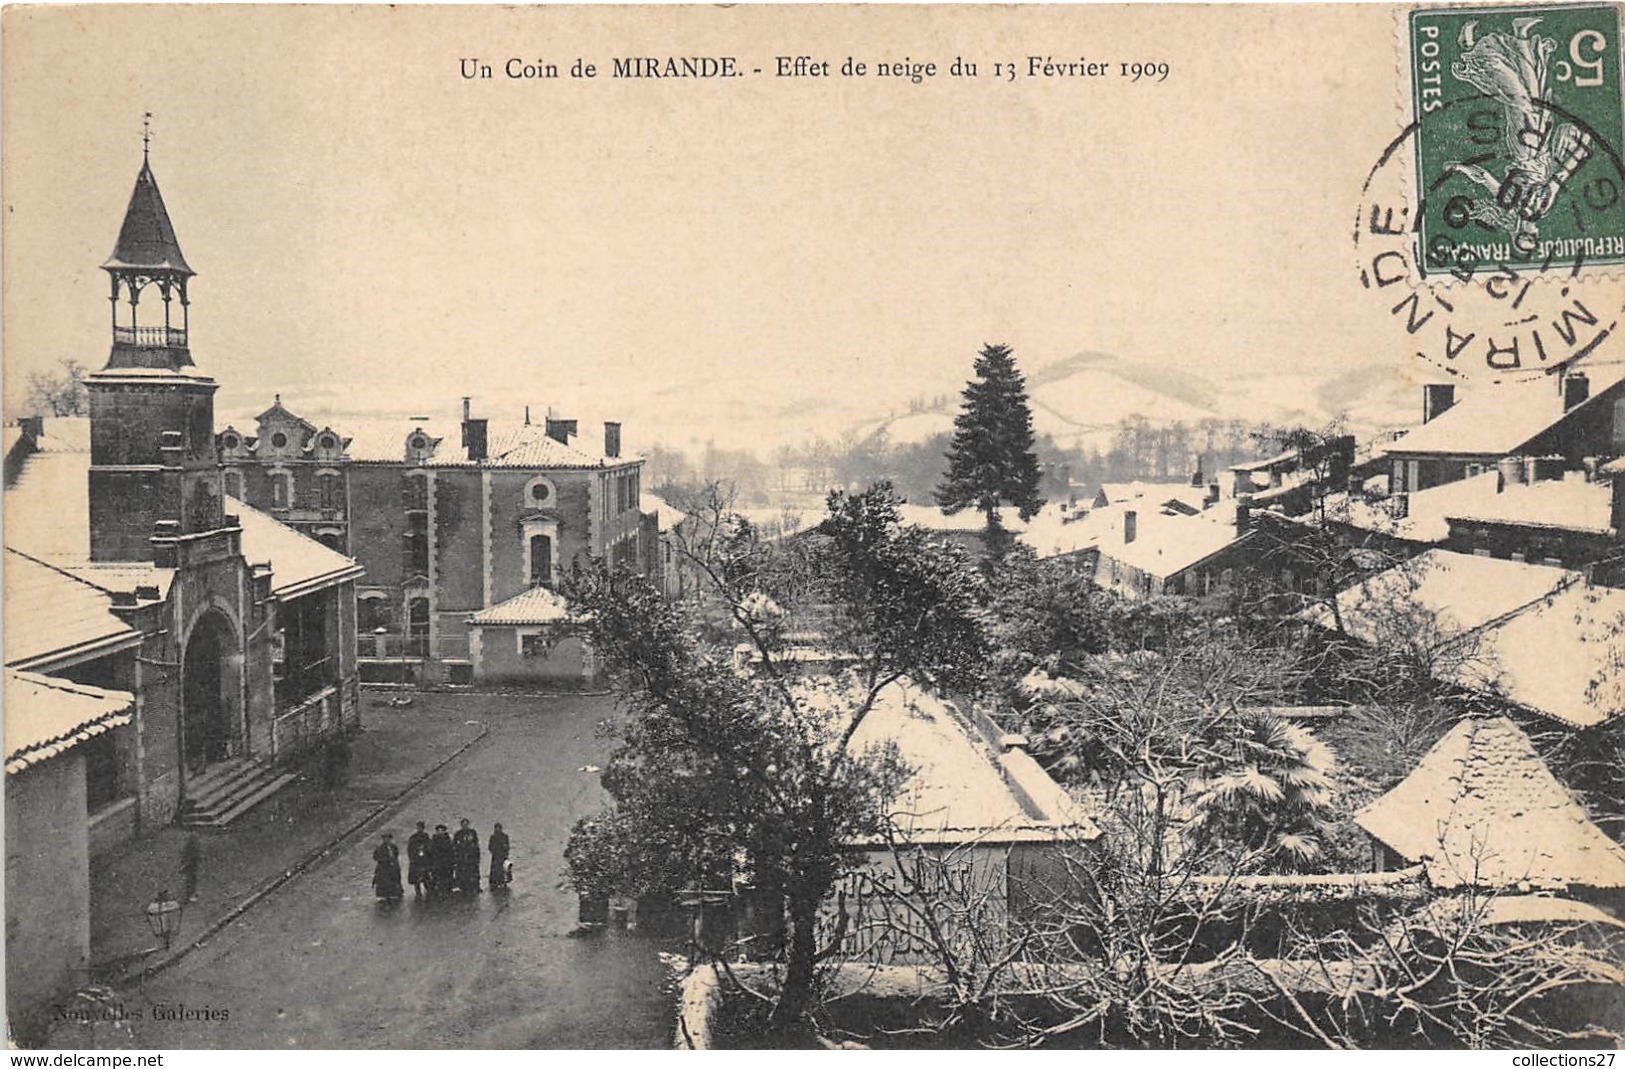 32-MIRANDE- UN COIN, EFFET DE NEIGE DU 13 FEVRIER 1909 - Mirande